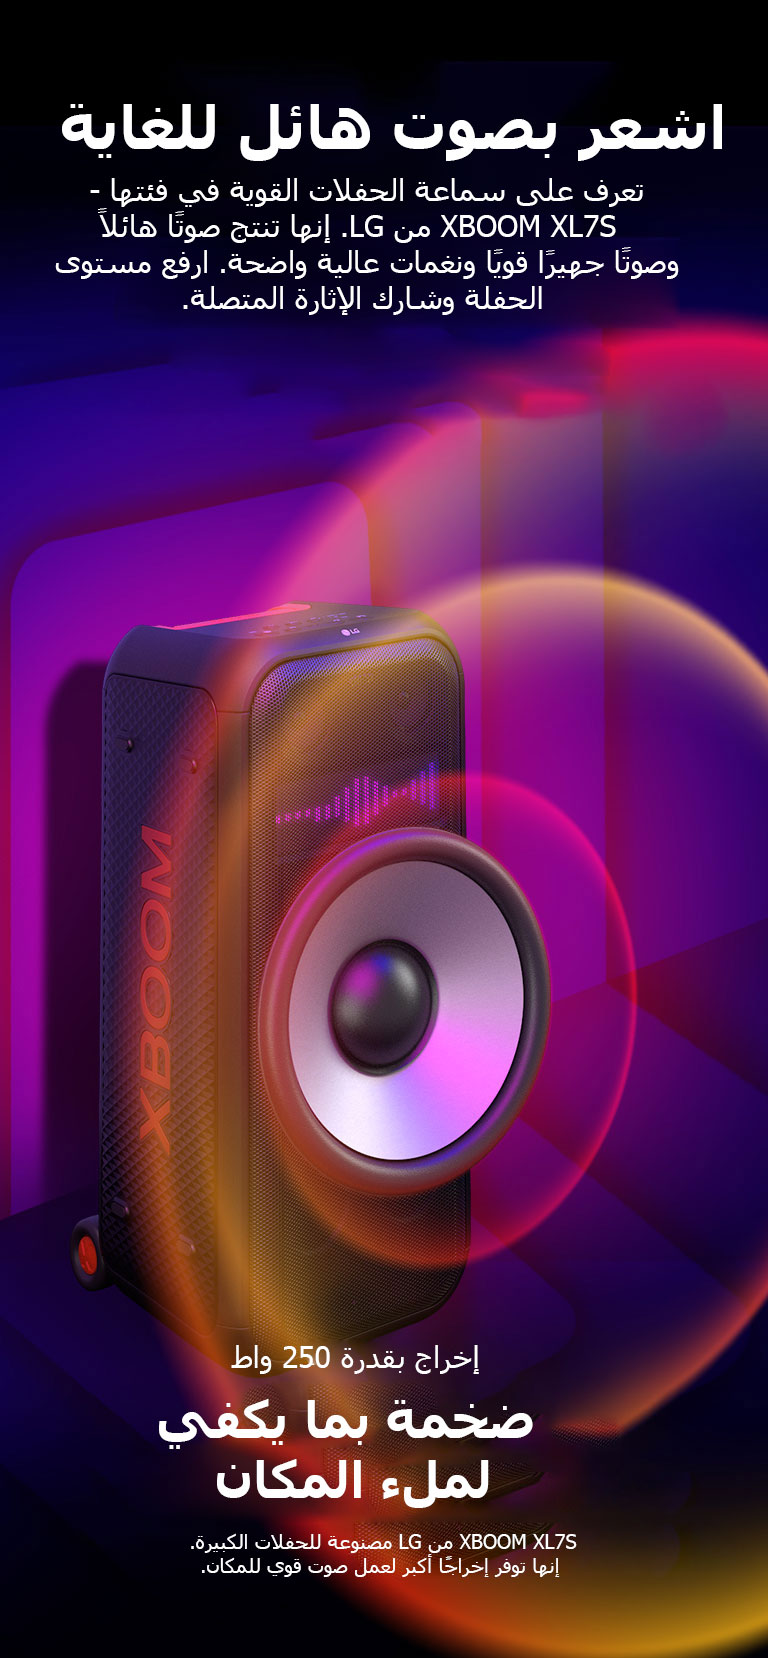 XBOOM XL7S من LG في فضاء لا نهائي. تظهر رسومات صوتية مربعة على الحائط. في وسط السماعة، يتم تكبير مضخم الصوت العملاق مقاس 8 بوصات من أجل التأكيد على صوته الضخم بقدرة 250 واط. تخرج موجات صوتية من مضخم الصوت.